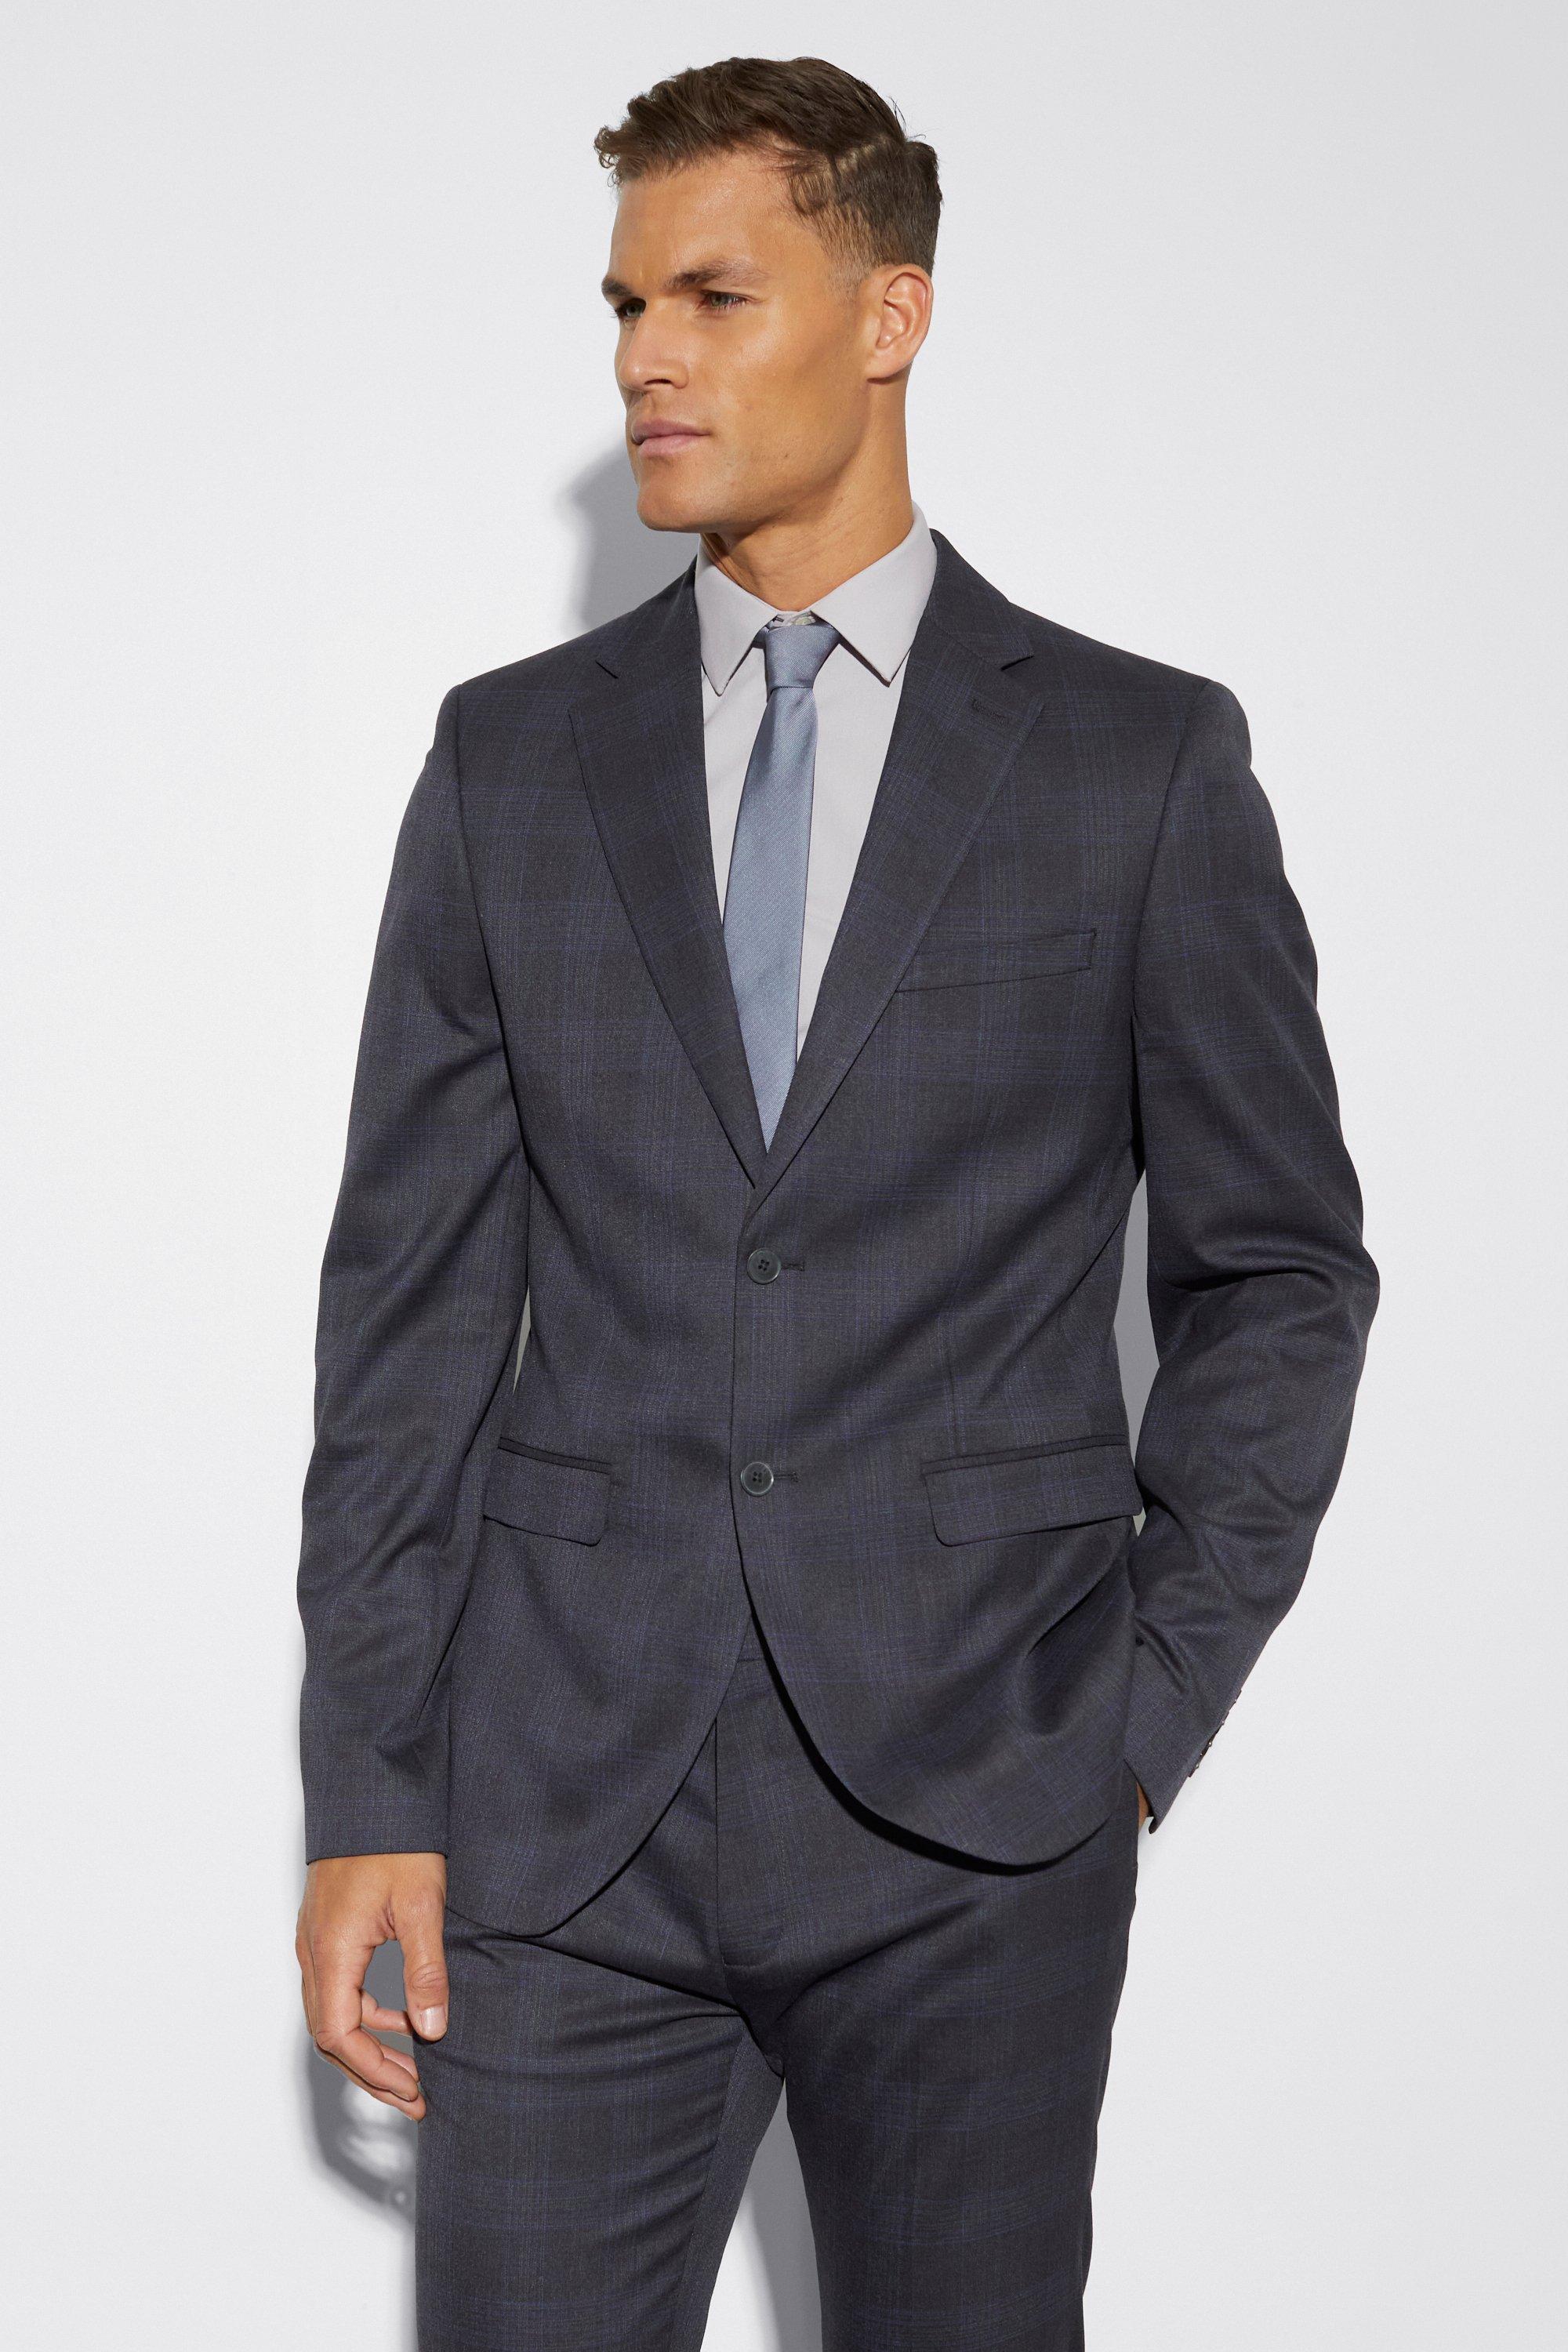 tall - veste de costume droite cintrée à carreaux homme - gris - 38, gris